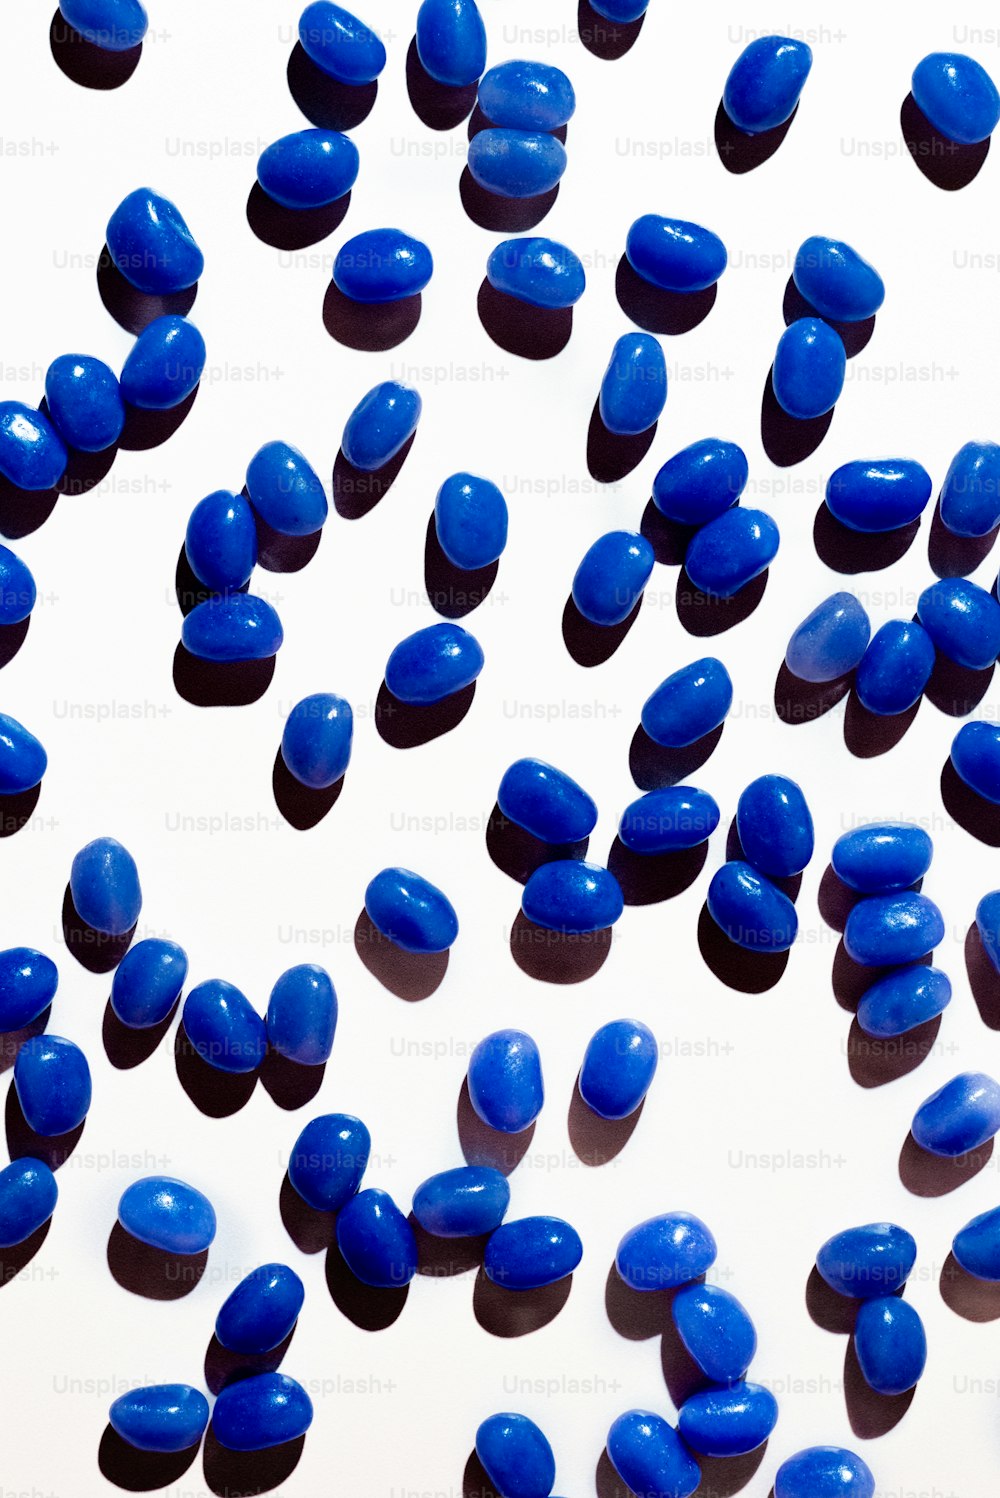 많은 파란 알약이 하얀 표면에 흩어져 있습니다.